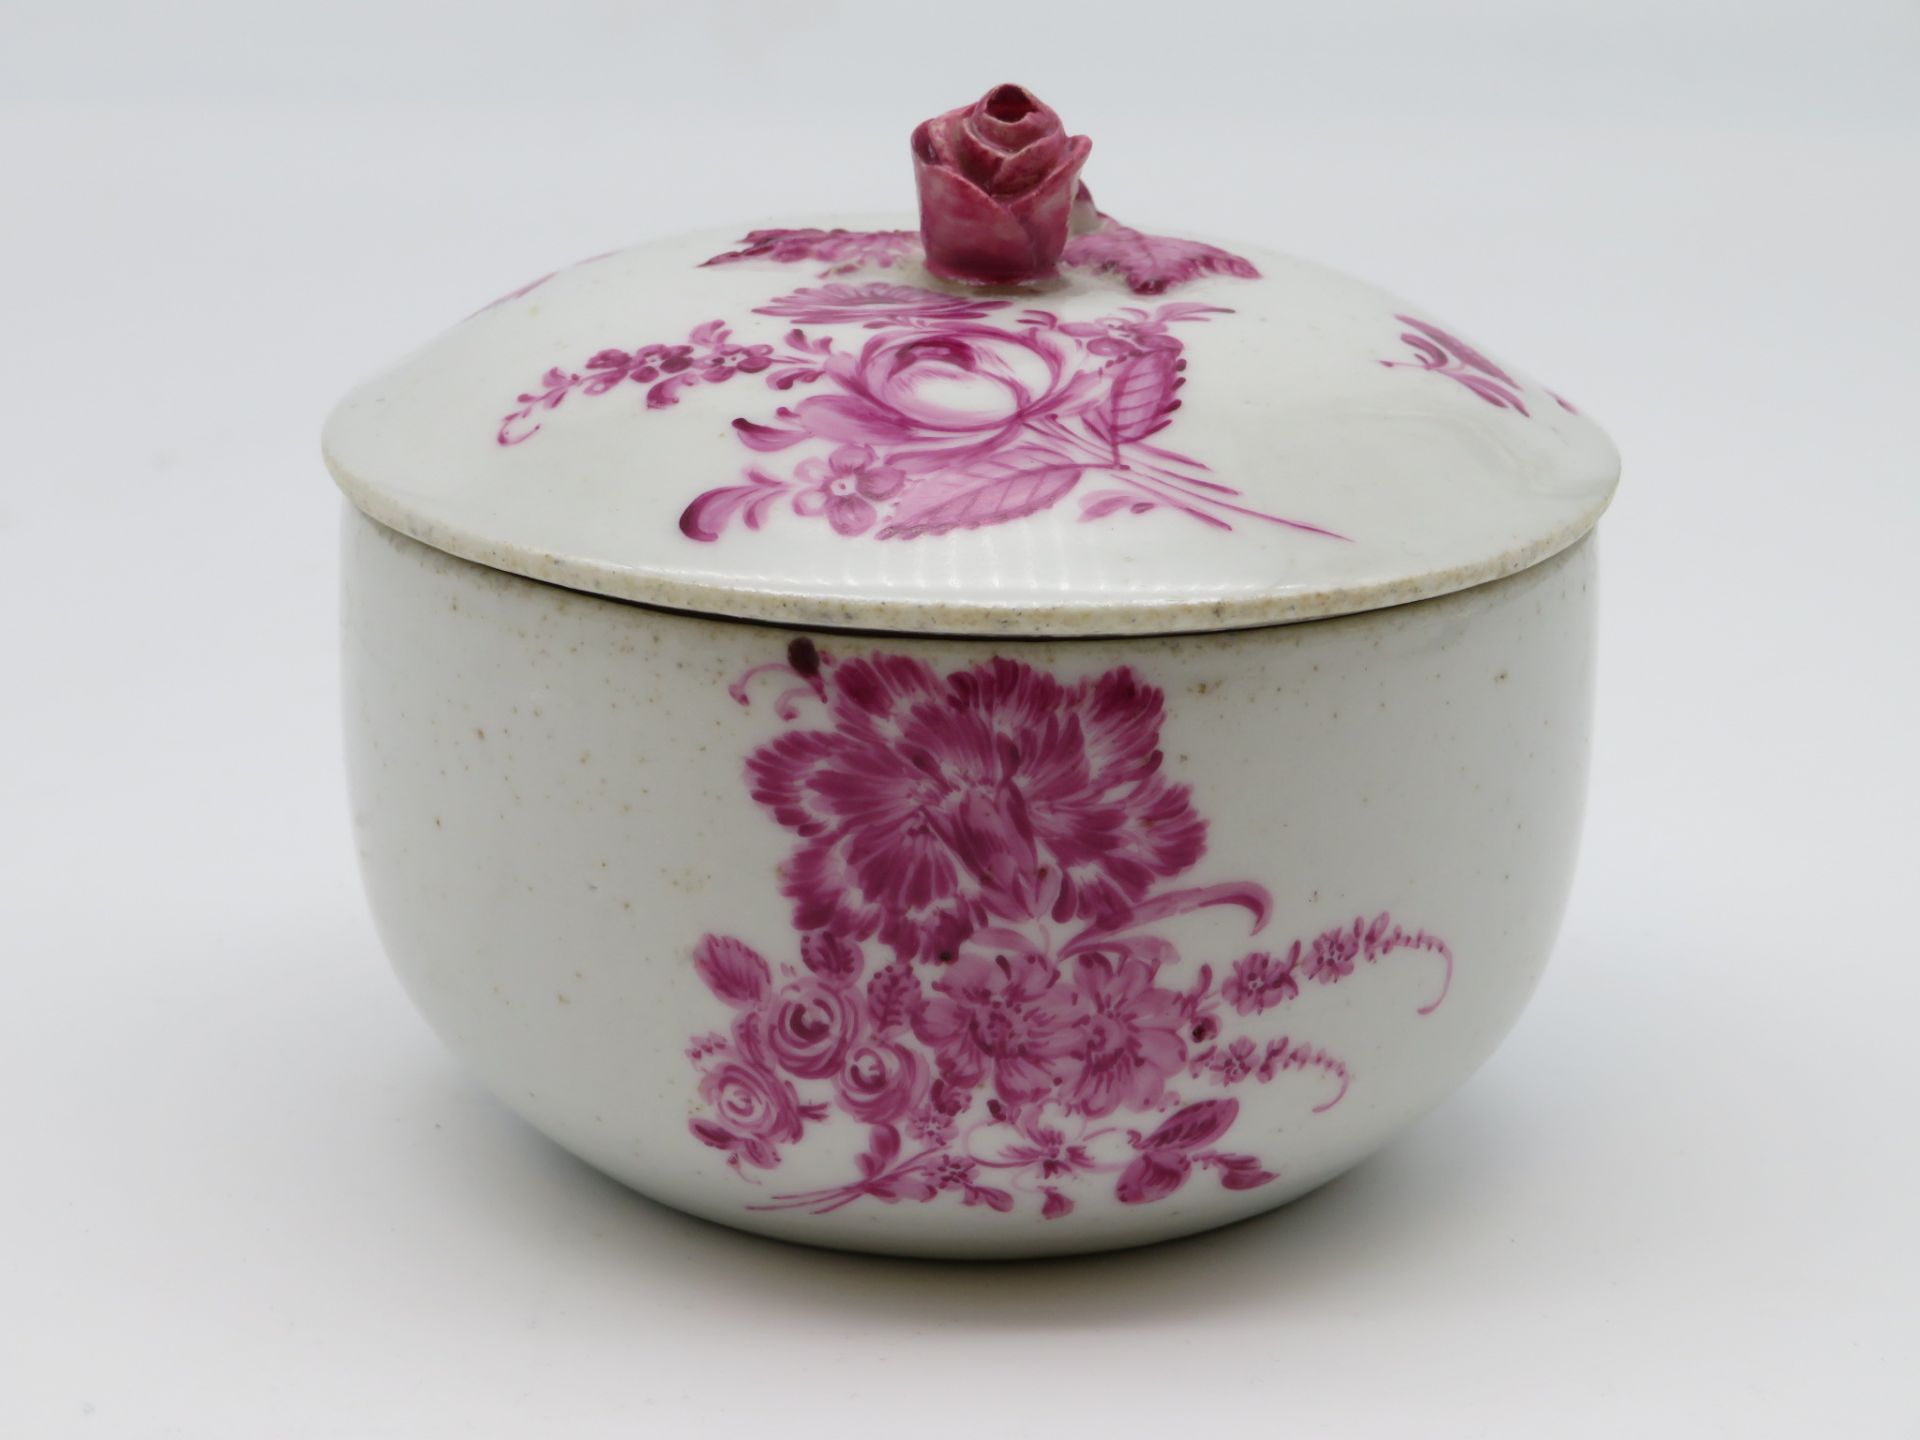 Deckeldose, 18./19. Jahrhundert, Weißporzellan mit purpurfarbener, floraler Bemalung, reliefierter